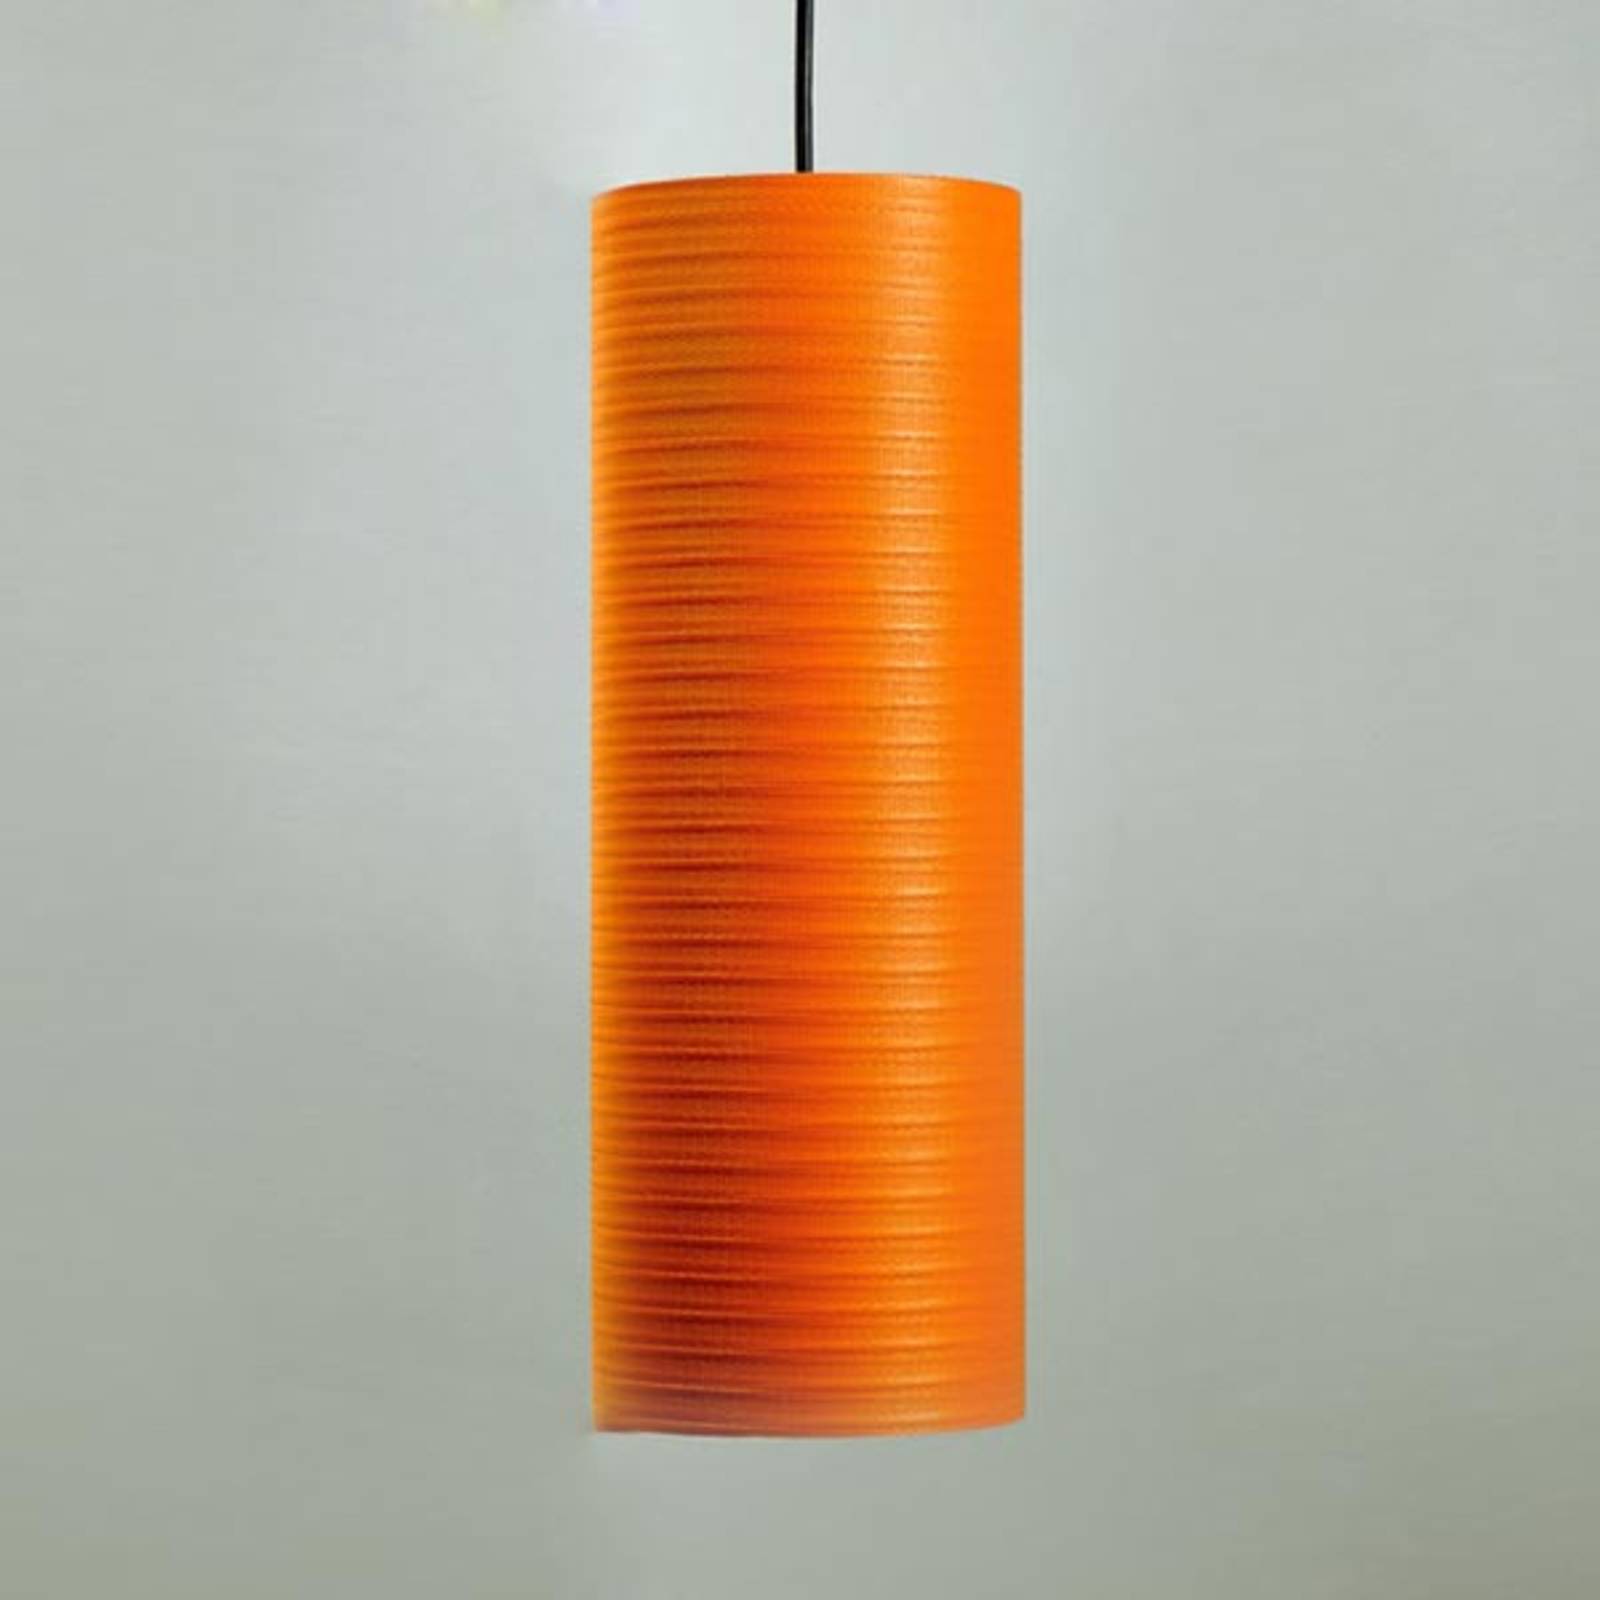 Suspension Tube, 30 cm, orange